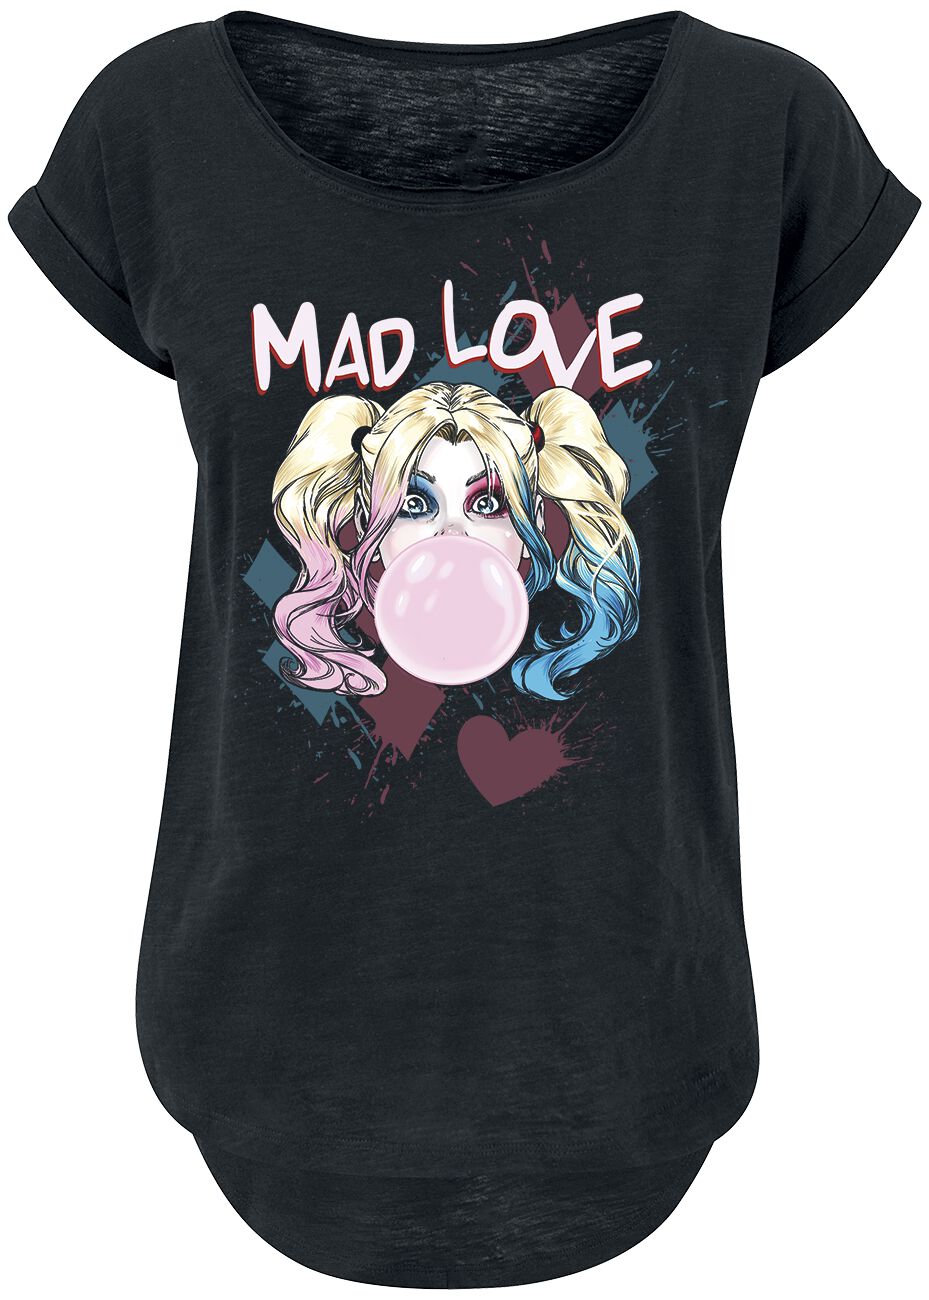 Harley Quinn - DC Comics T-Shirt - Mad Love - XS bis 3XL - für Damen - Größe M - schwarz  - EMP exklusives Merchandise!